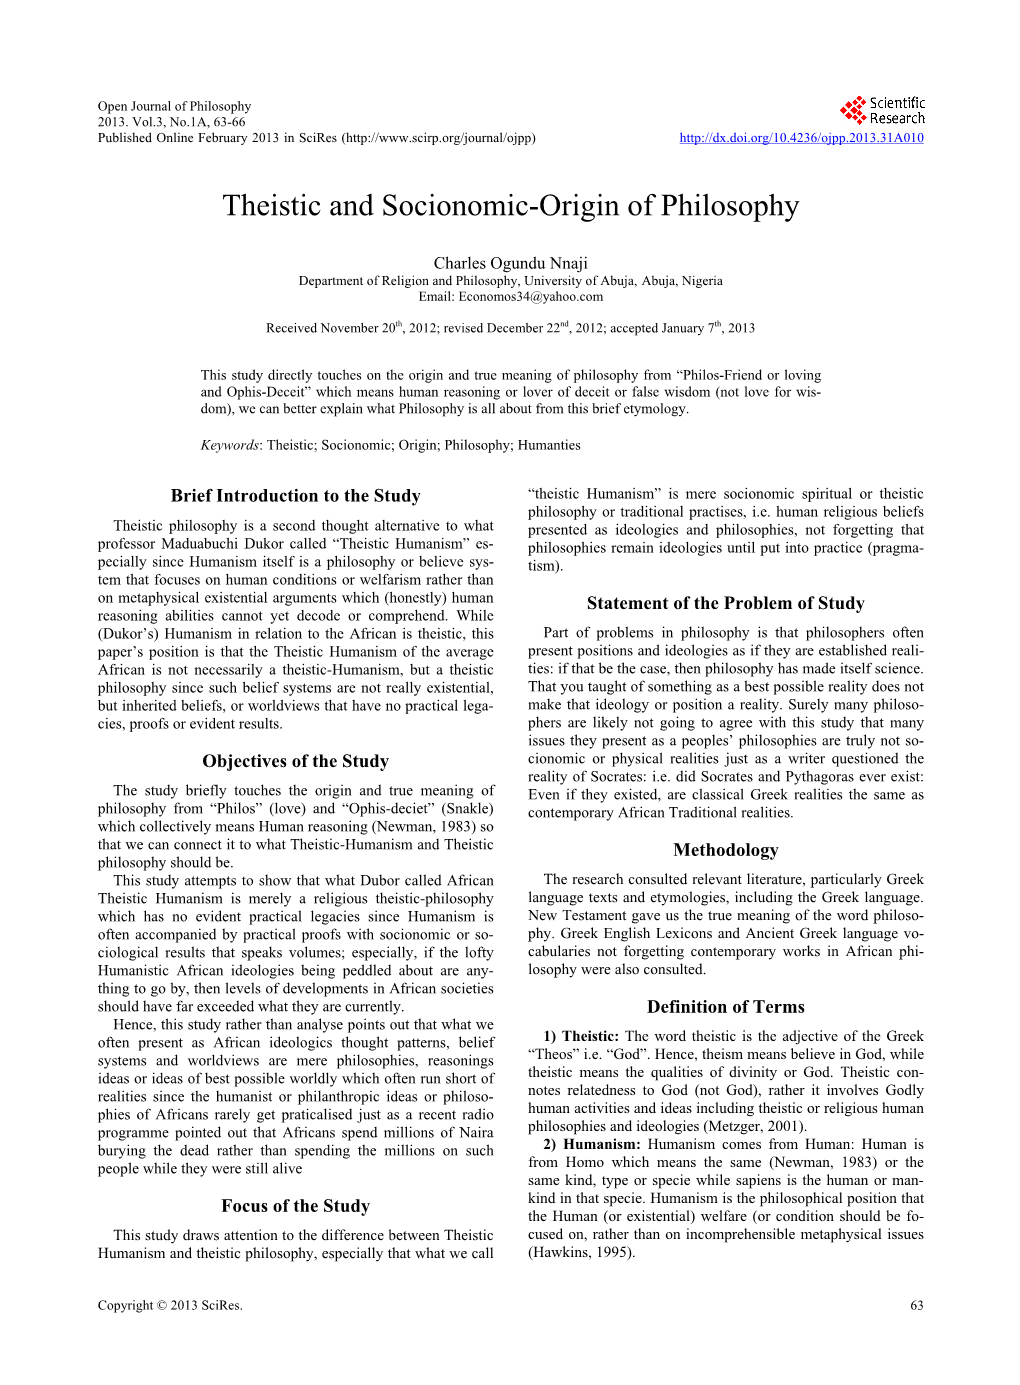 Theistic and Socionomic-Origin of Philosophy